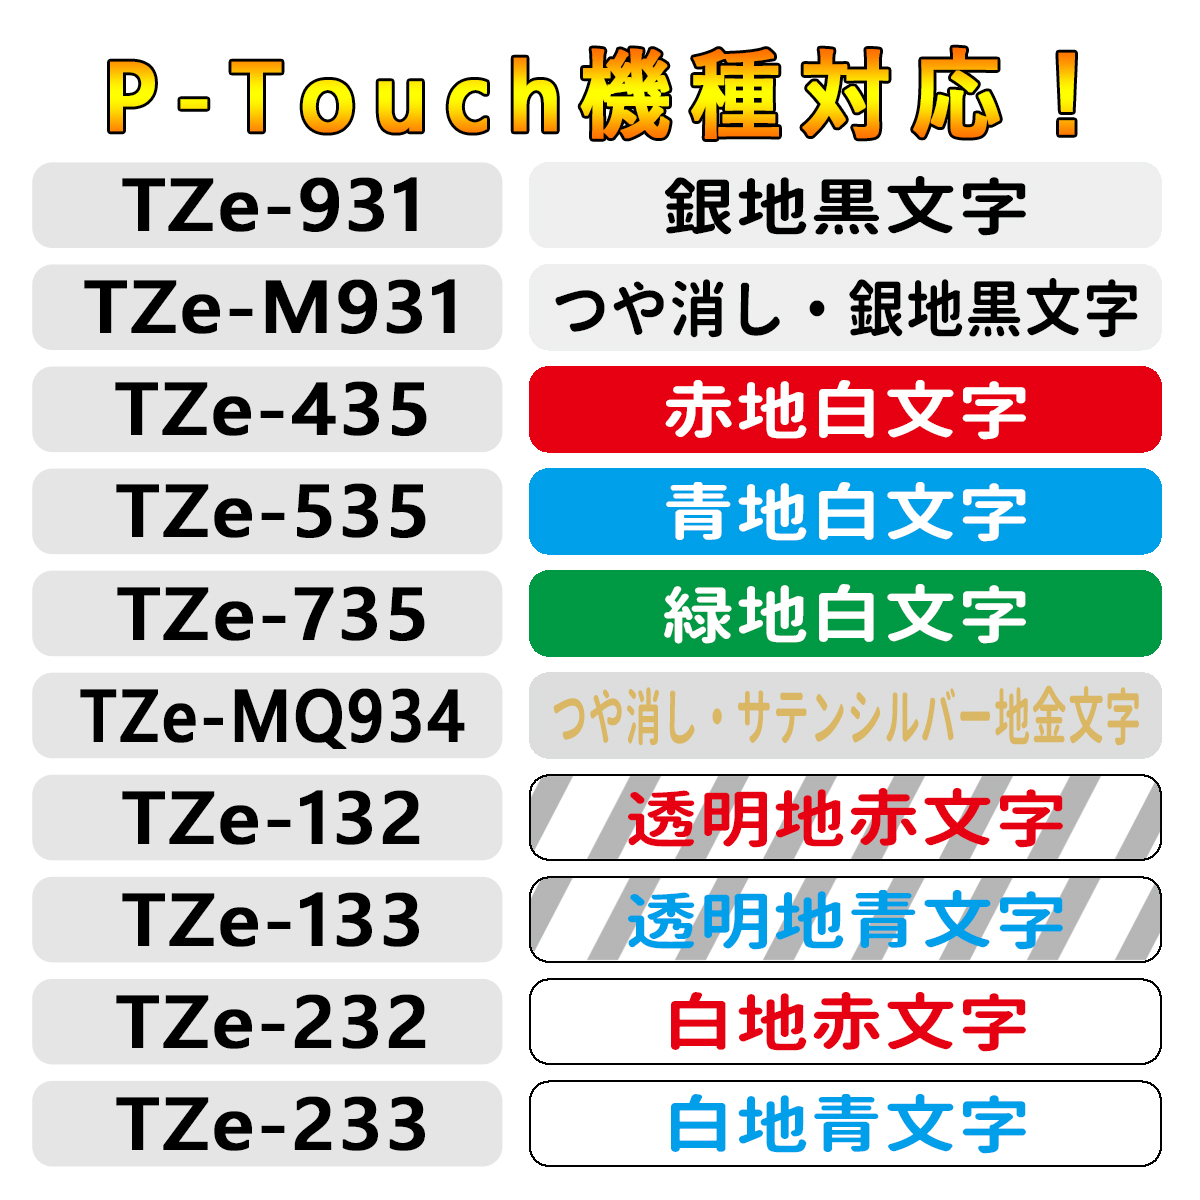 ブラザー用 Tzeテープ 36mm幅X8m巻 12色自由選択 互換品 5個 P-Touch用 互換 ピータッチ テープ ピータッチキューブ 互換テープカートリッジ